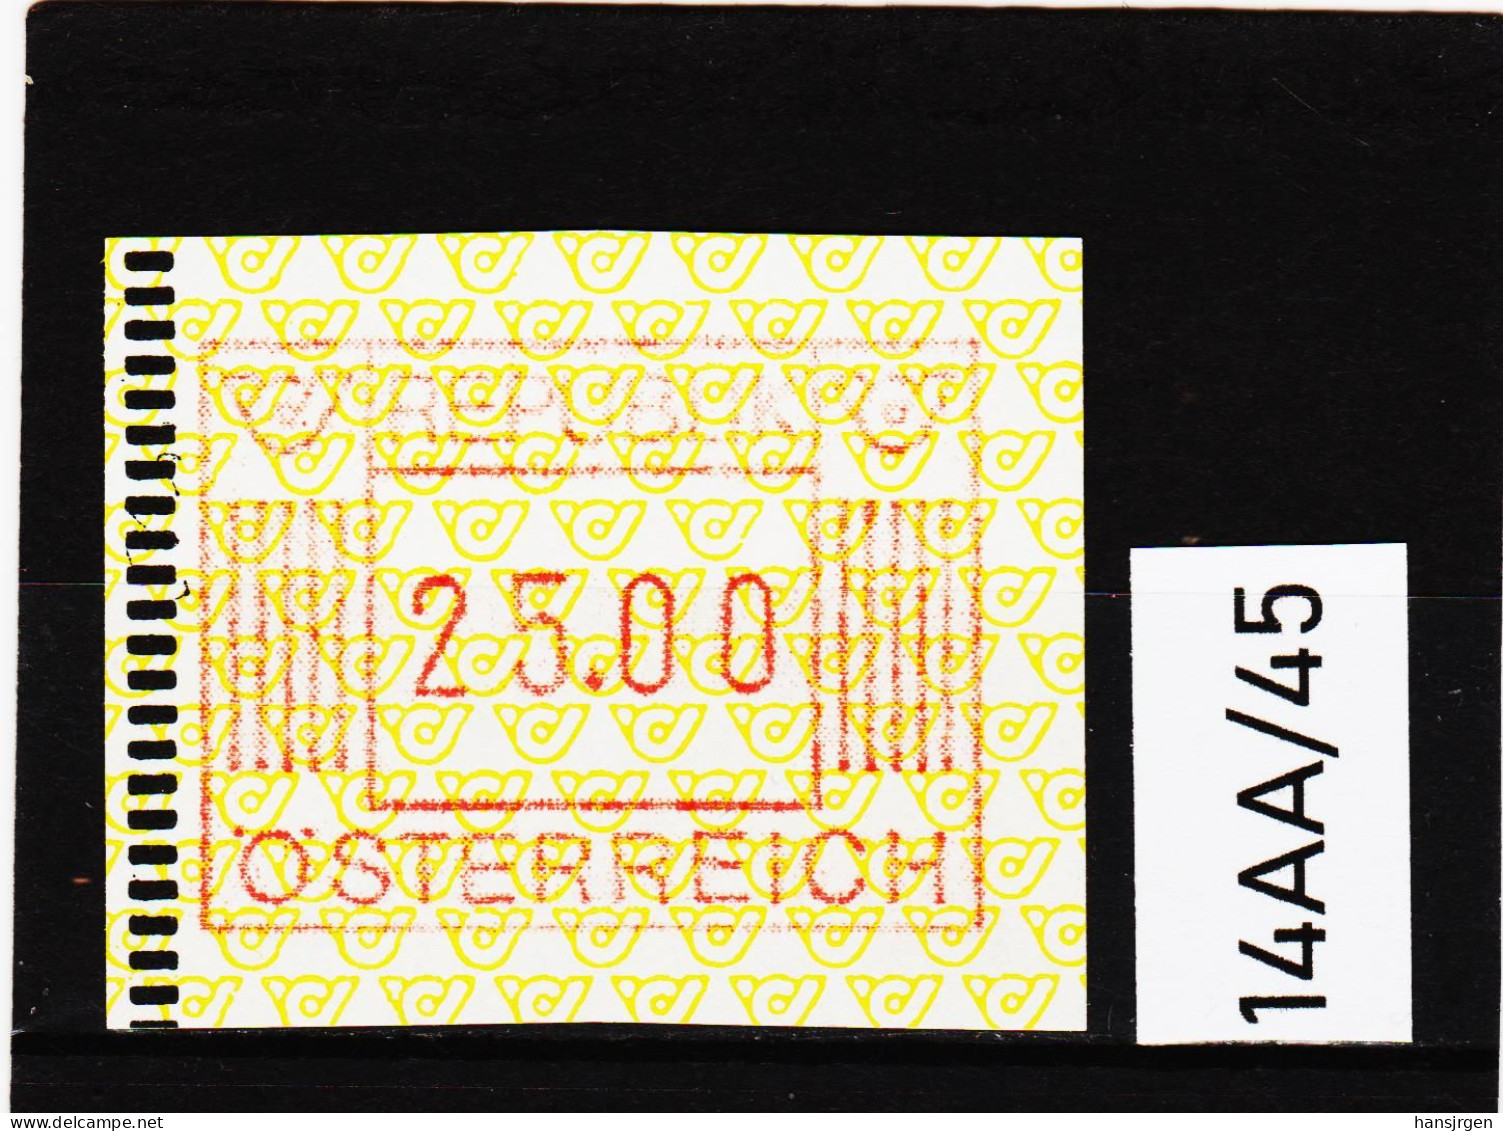 14AA/45  ÖSTERREICH 1983 AUTOMATENMARKEN 1. AUSGABE  25,00 SCHILLING   ** Postfrisch - Automatenmarken [ATM]